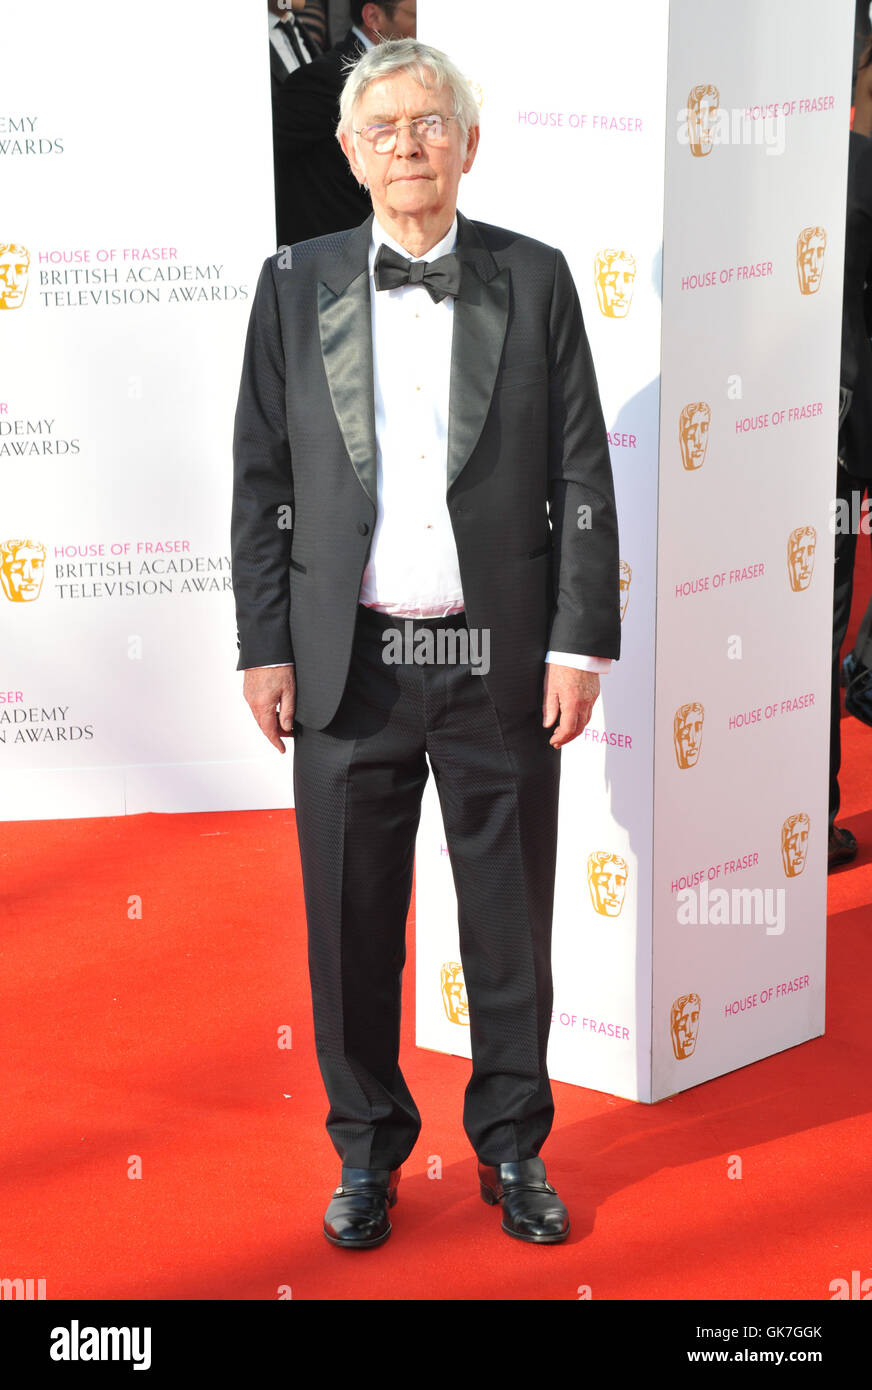 House of Fraser televisione BAFTA Awards tenutosi presso il Royal Festival Hall - Arrivi con: Tom Courtenay dove: Londra, Regno Unito quando: 08 Maggio 2016 Foto Stock